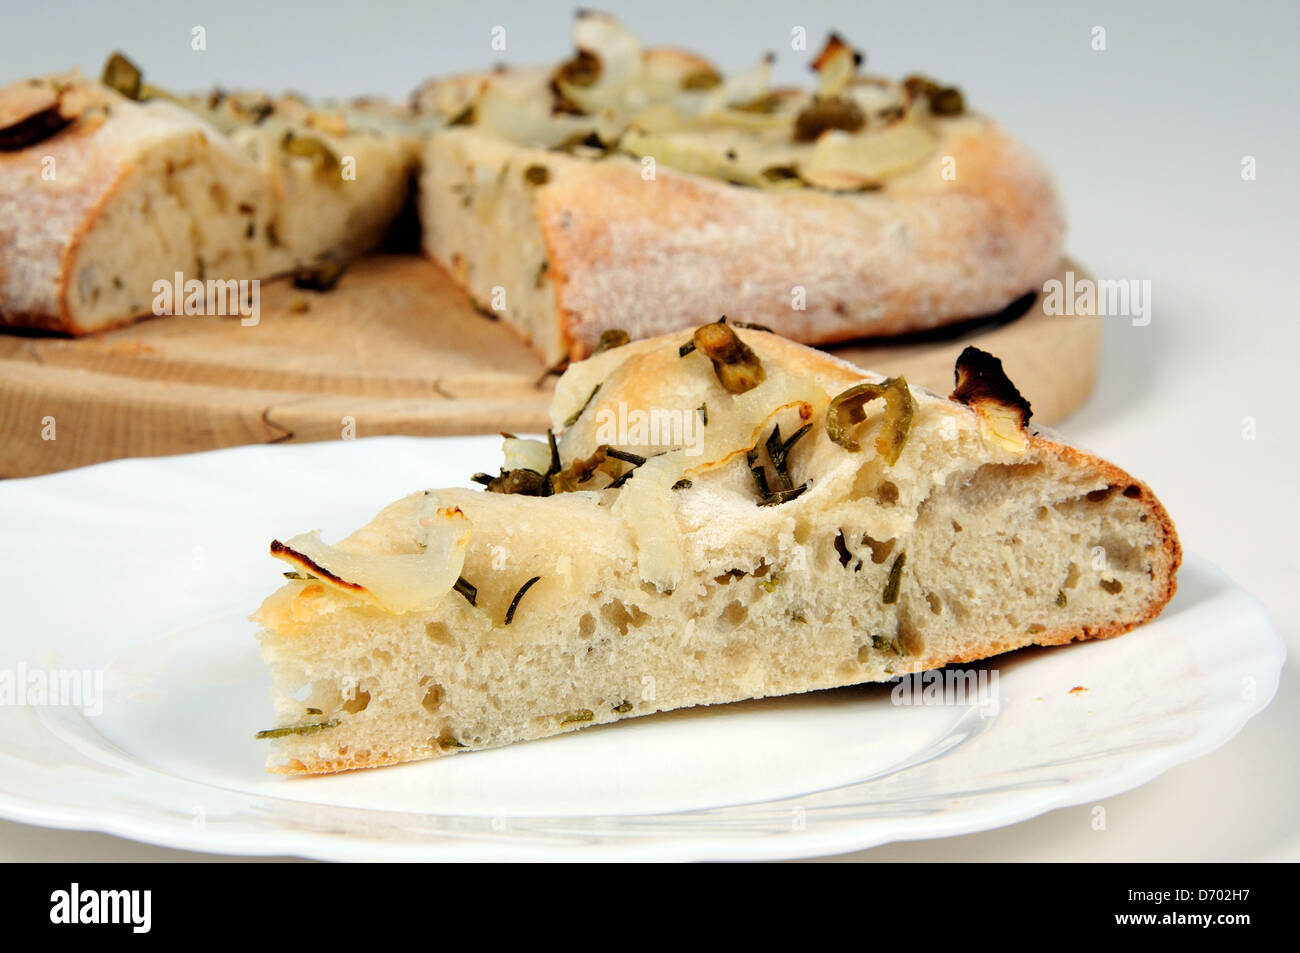 Italian green olive, Onion and Rosemary Focaccia bread. Stock Photo